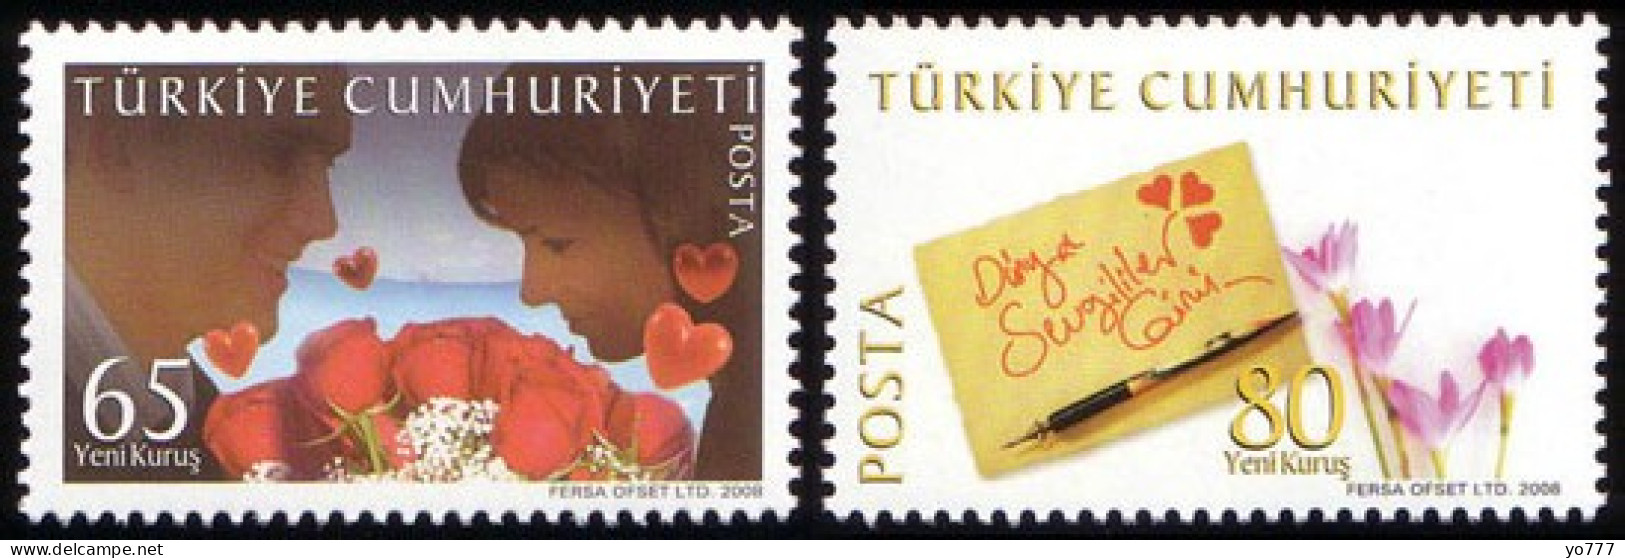 (3648-49) TURKEY WORLD VALANTINES DAY MNH** - Ungebraucht